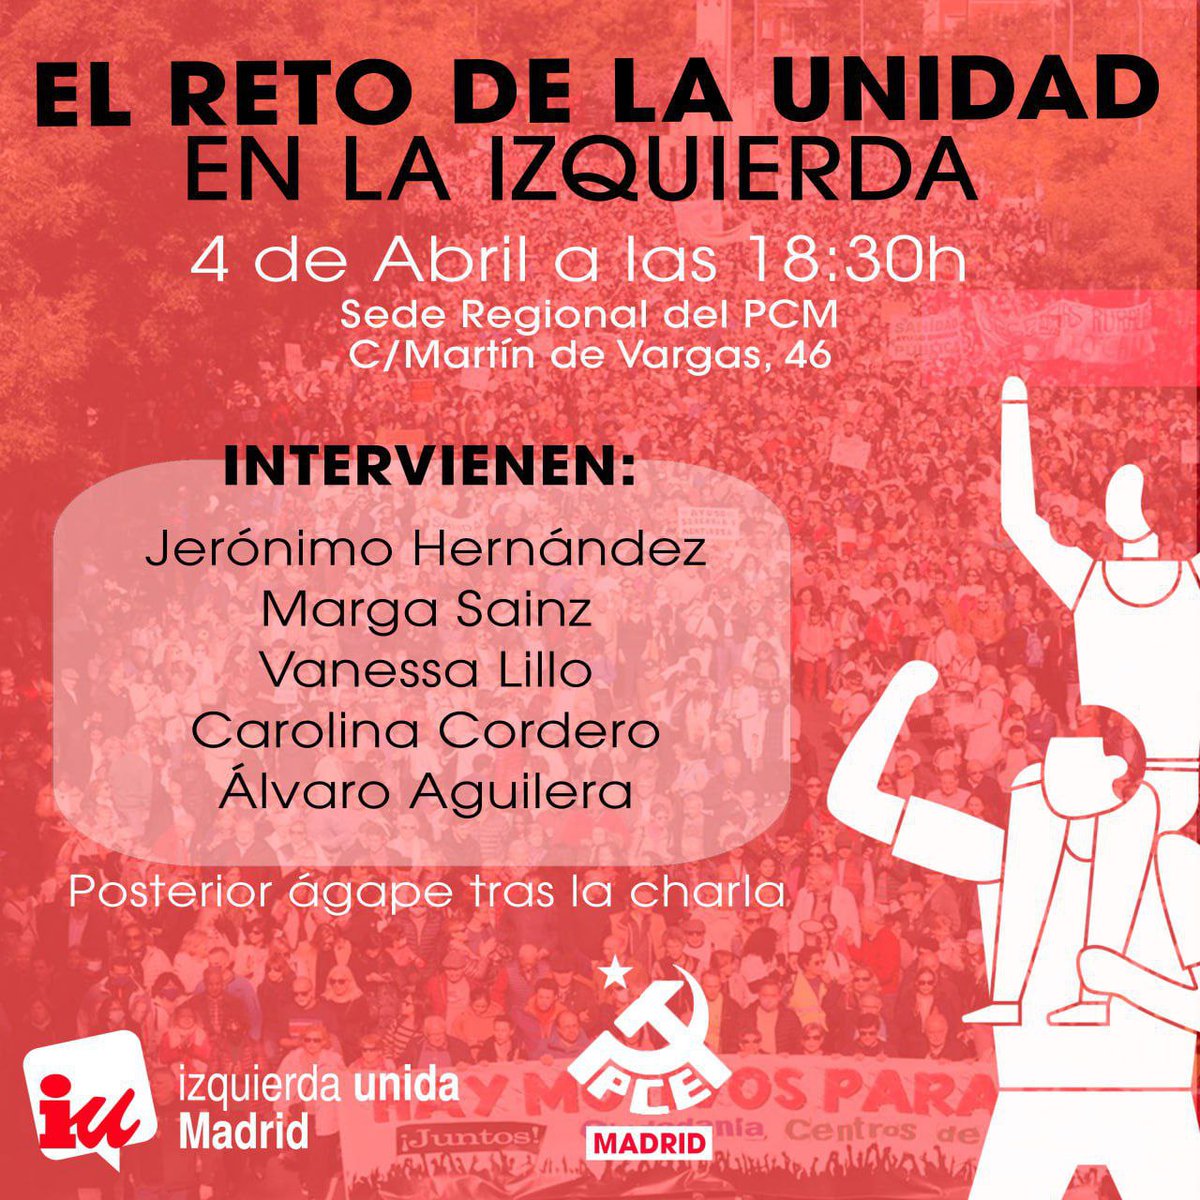 👉🏻 Esta tarde estaremos en la jornada de debate y reflexión “El reto de la Unidad de la izquierda” que ha organizado @IU_Madrid junto al @elpcm. De la mano de @AlvaroAgFa @CarolCordero_N @VaneLillo @margarita_sainz abordaremos los retos de la izquierda transformadora madrileña.